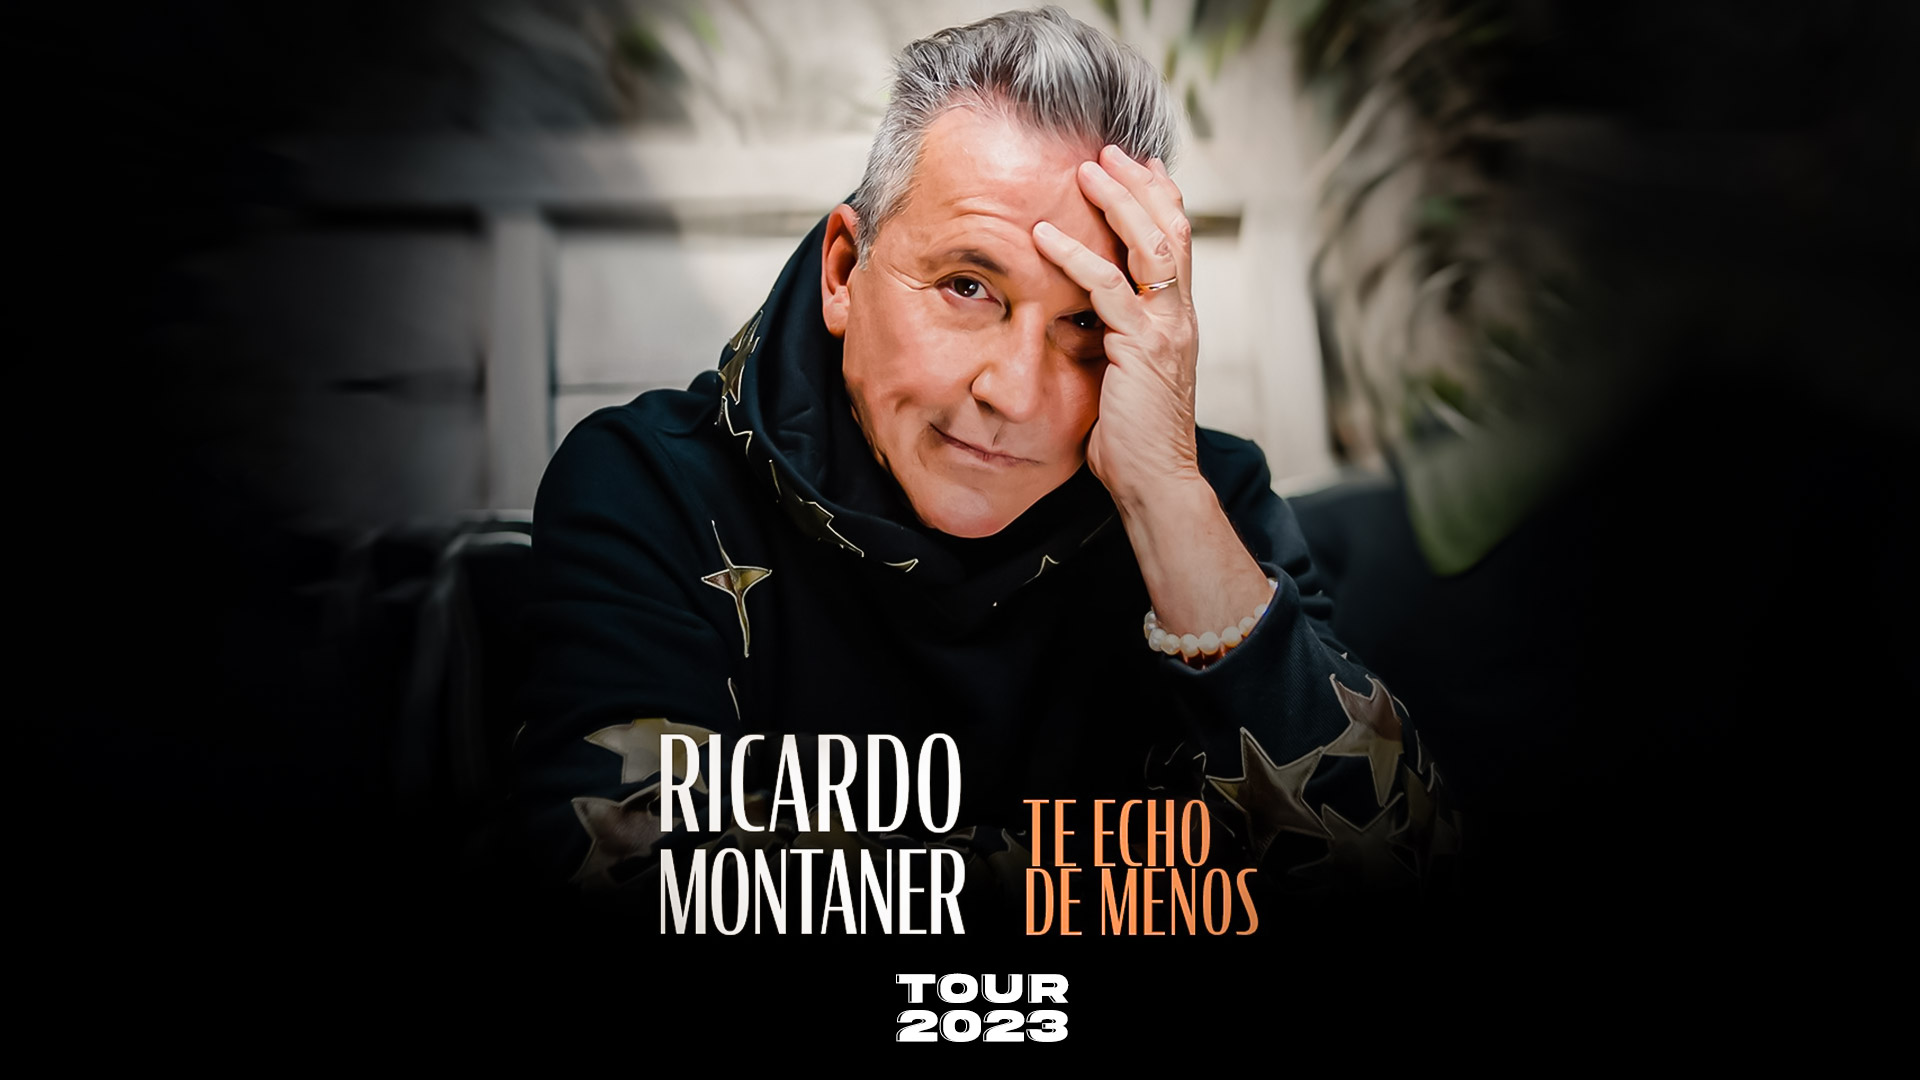 Ricardo Montaner'Te echo de menos Tour 2023'